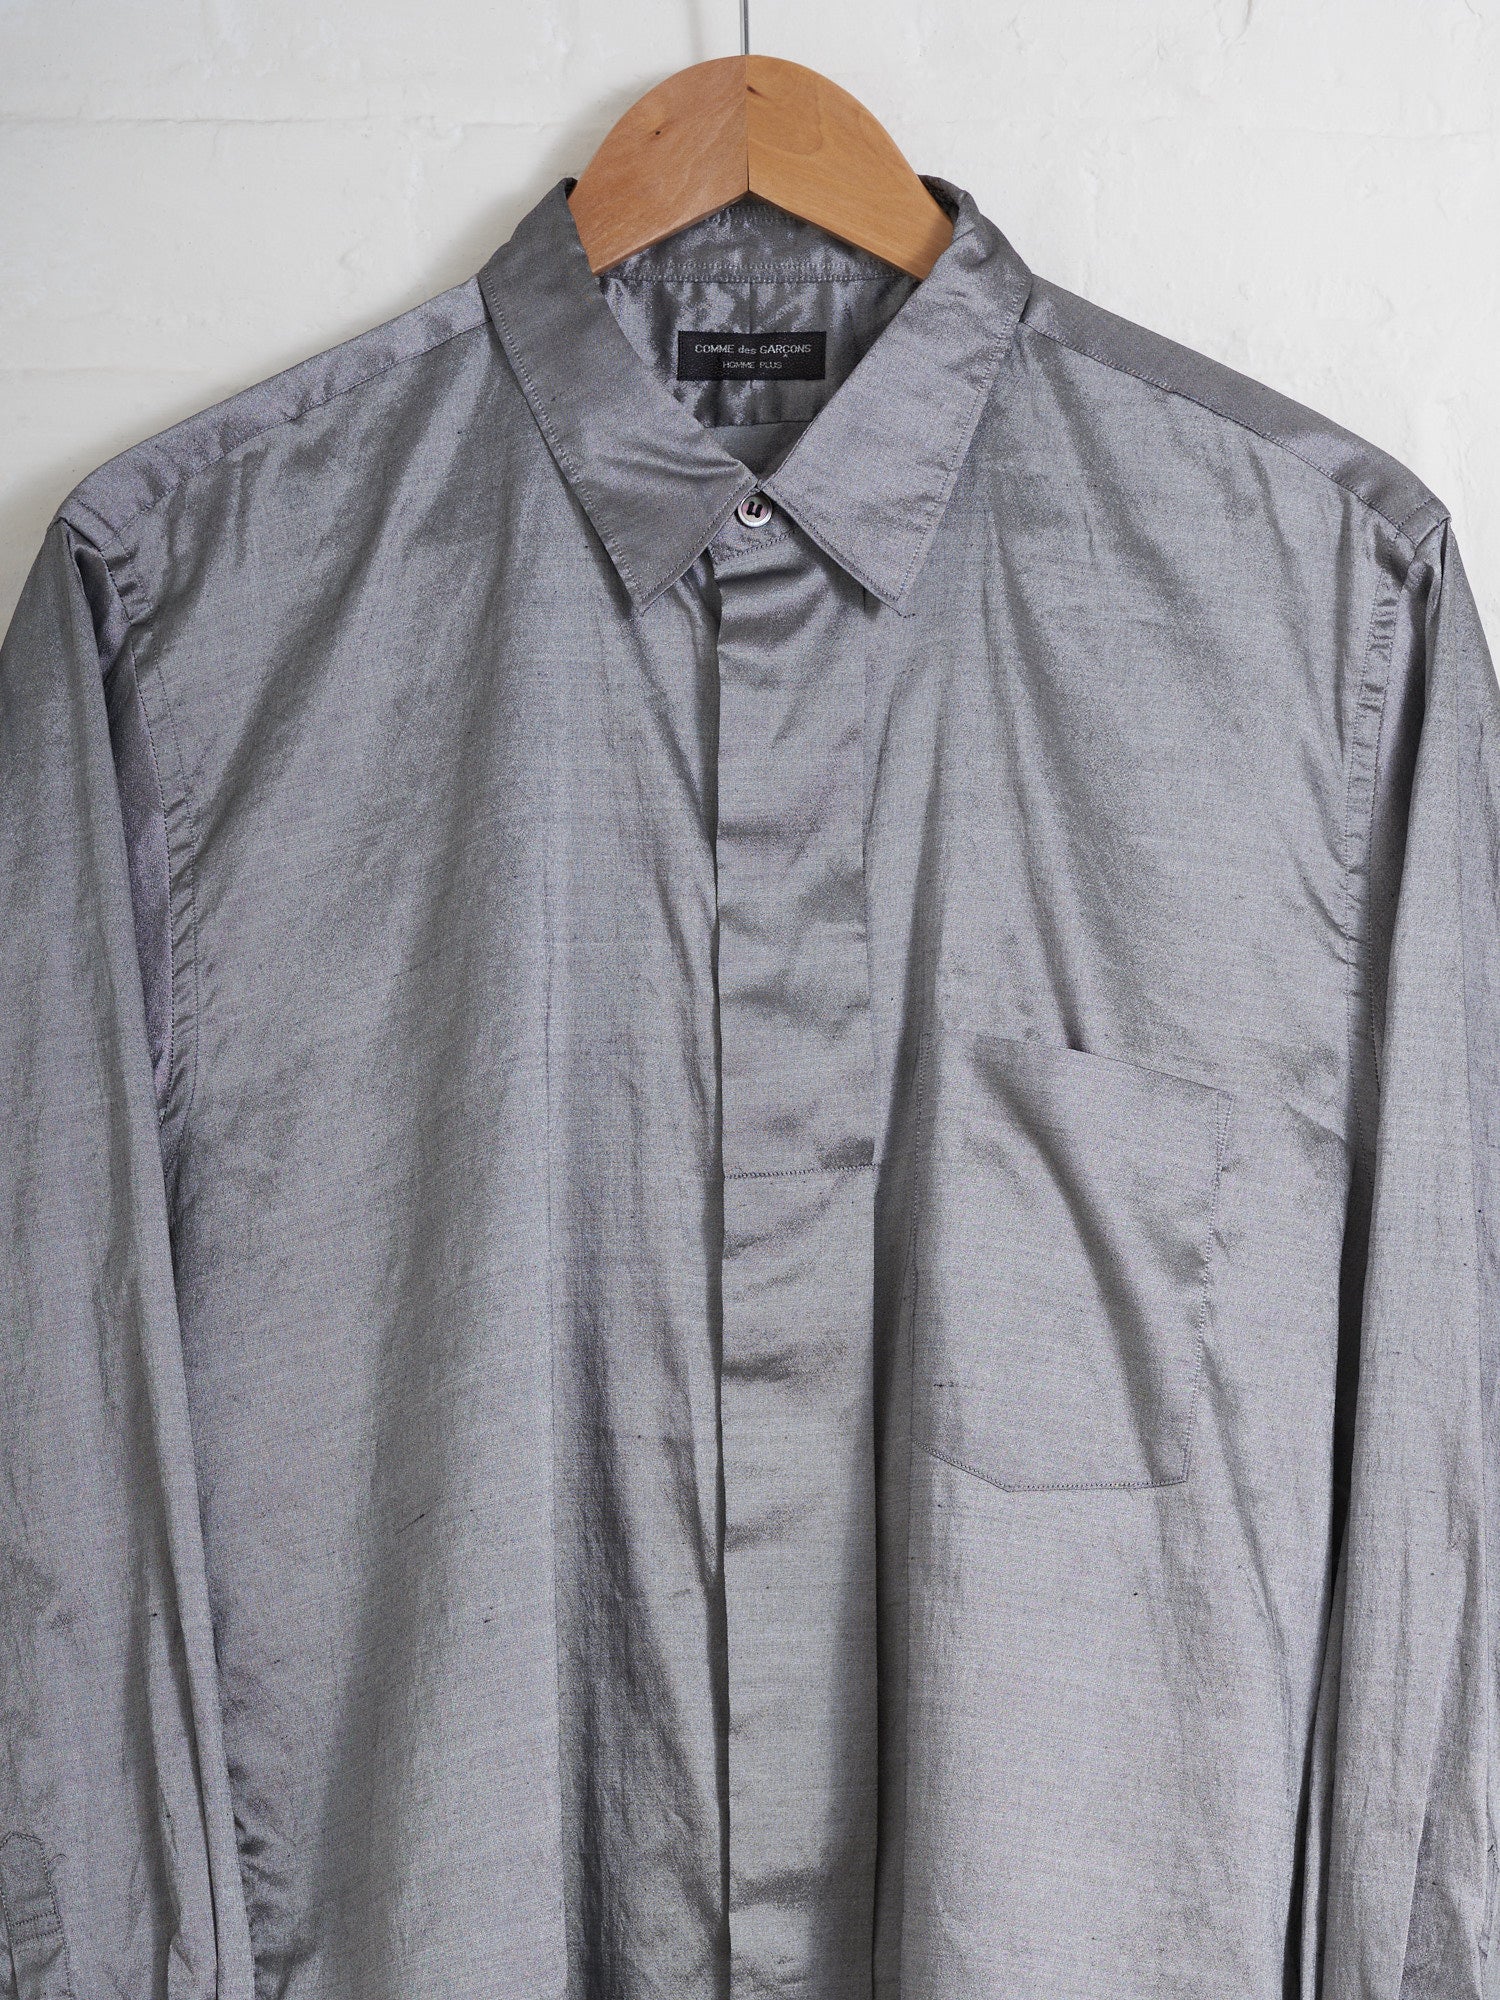 Comme des Garcons Homme Plus 1997 silver poly silk shantung wide placket shirt M